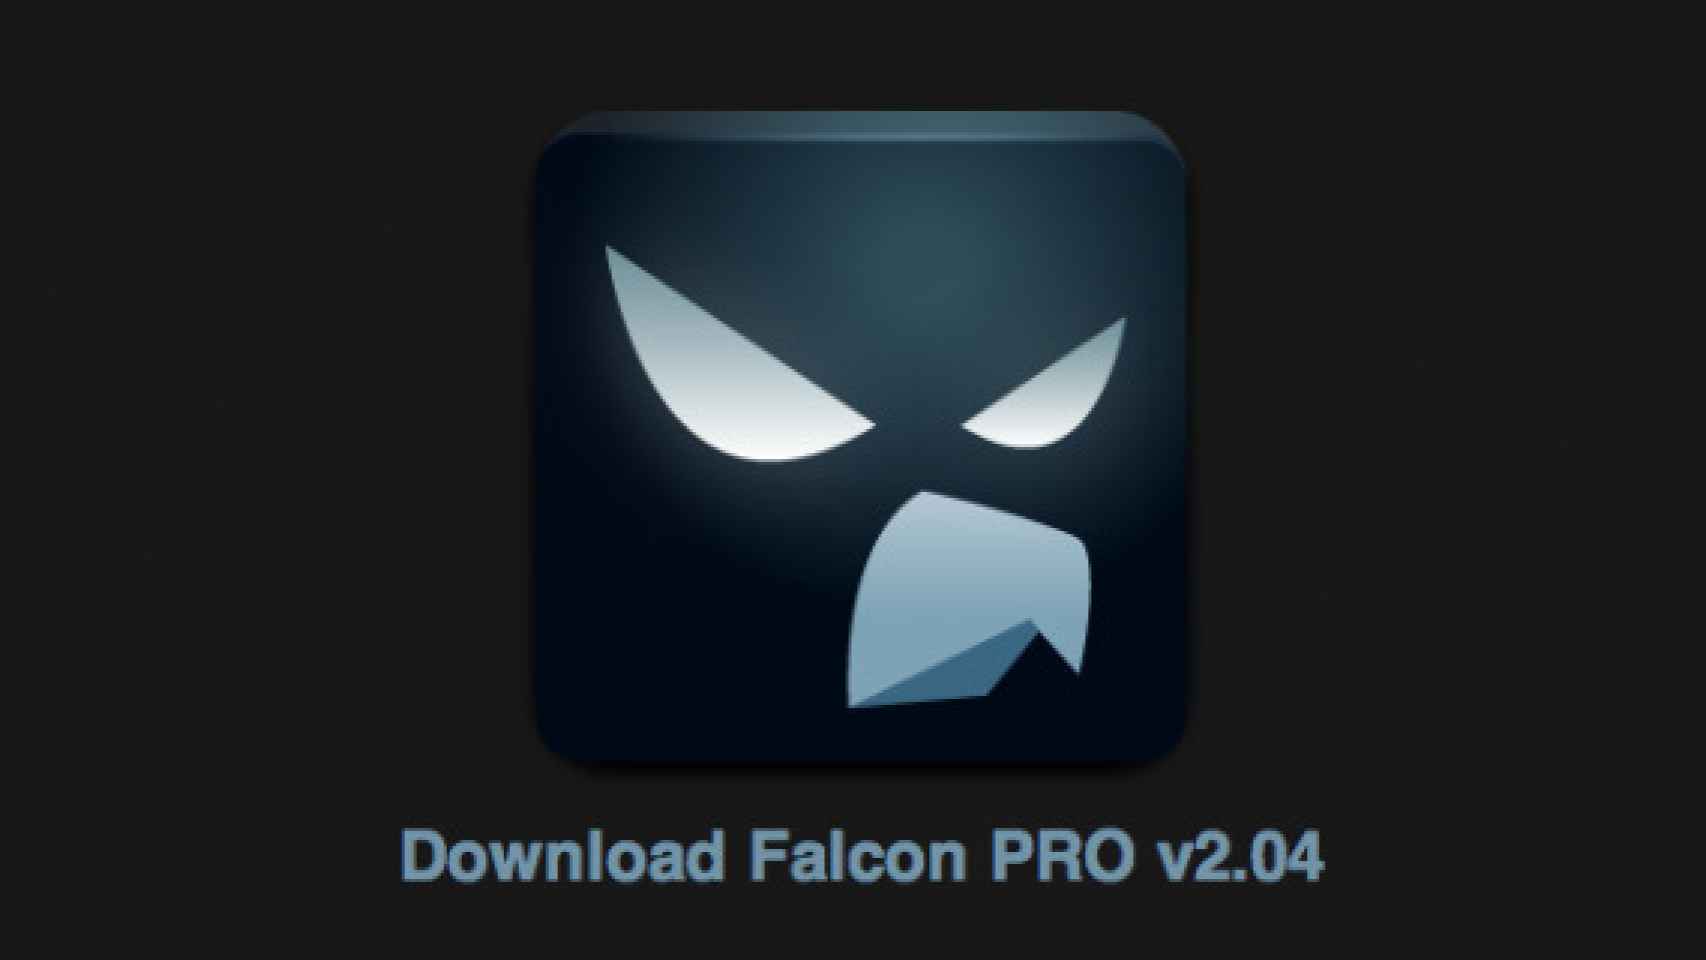 Falcon Pro ahora fuera de Google Play recibe una actualización en su nuevo rumbo